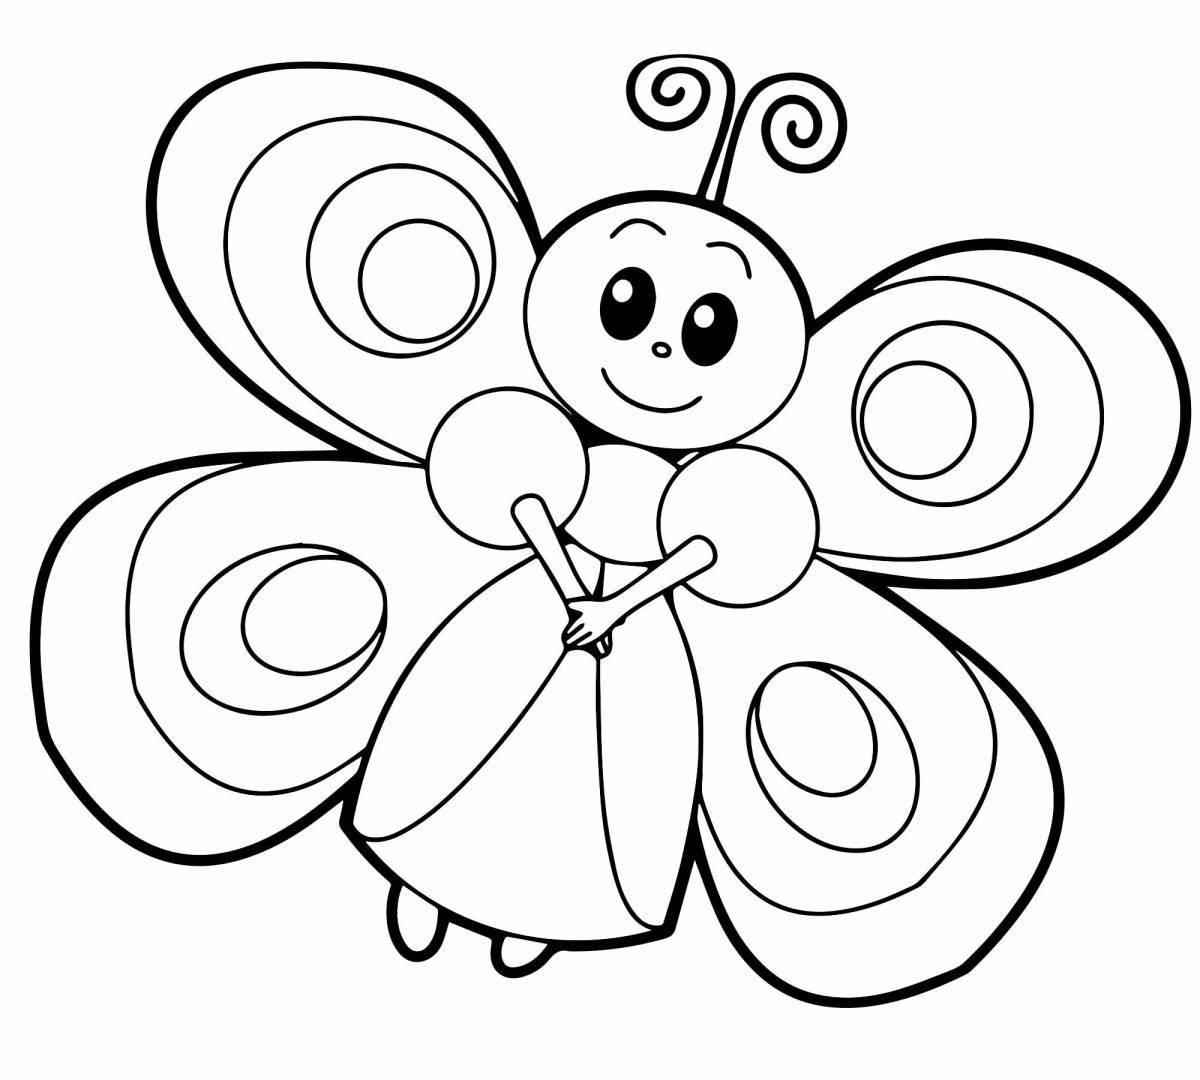 Милая раскраска бабочки для детей 5-6 лет